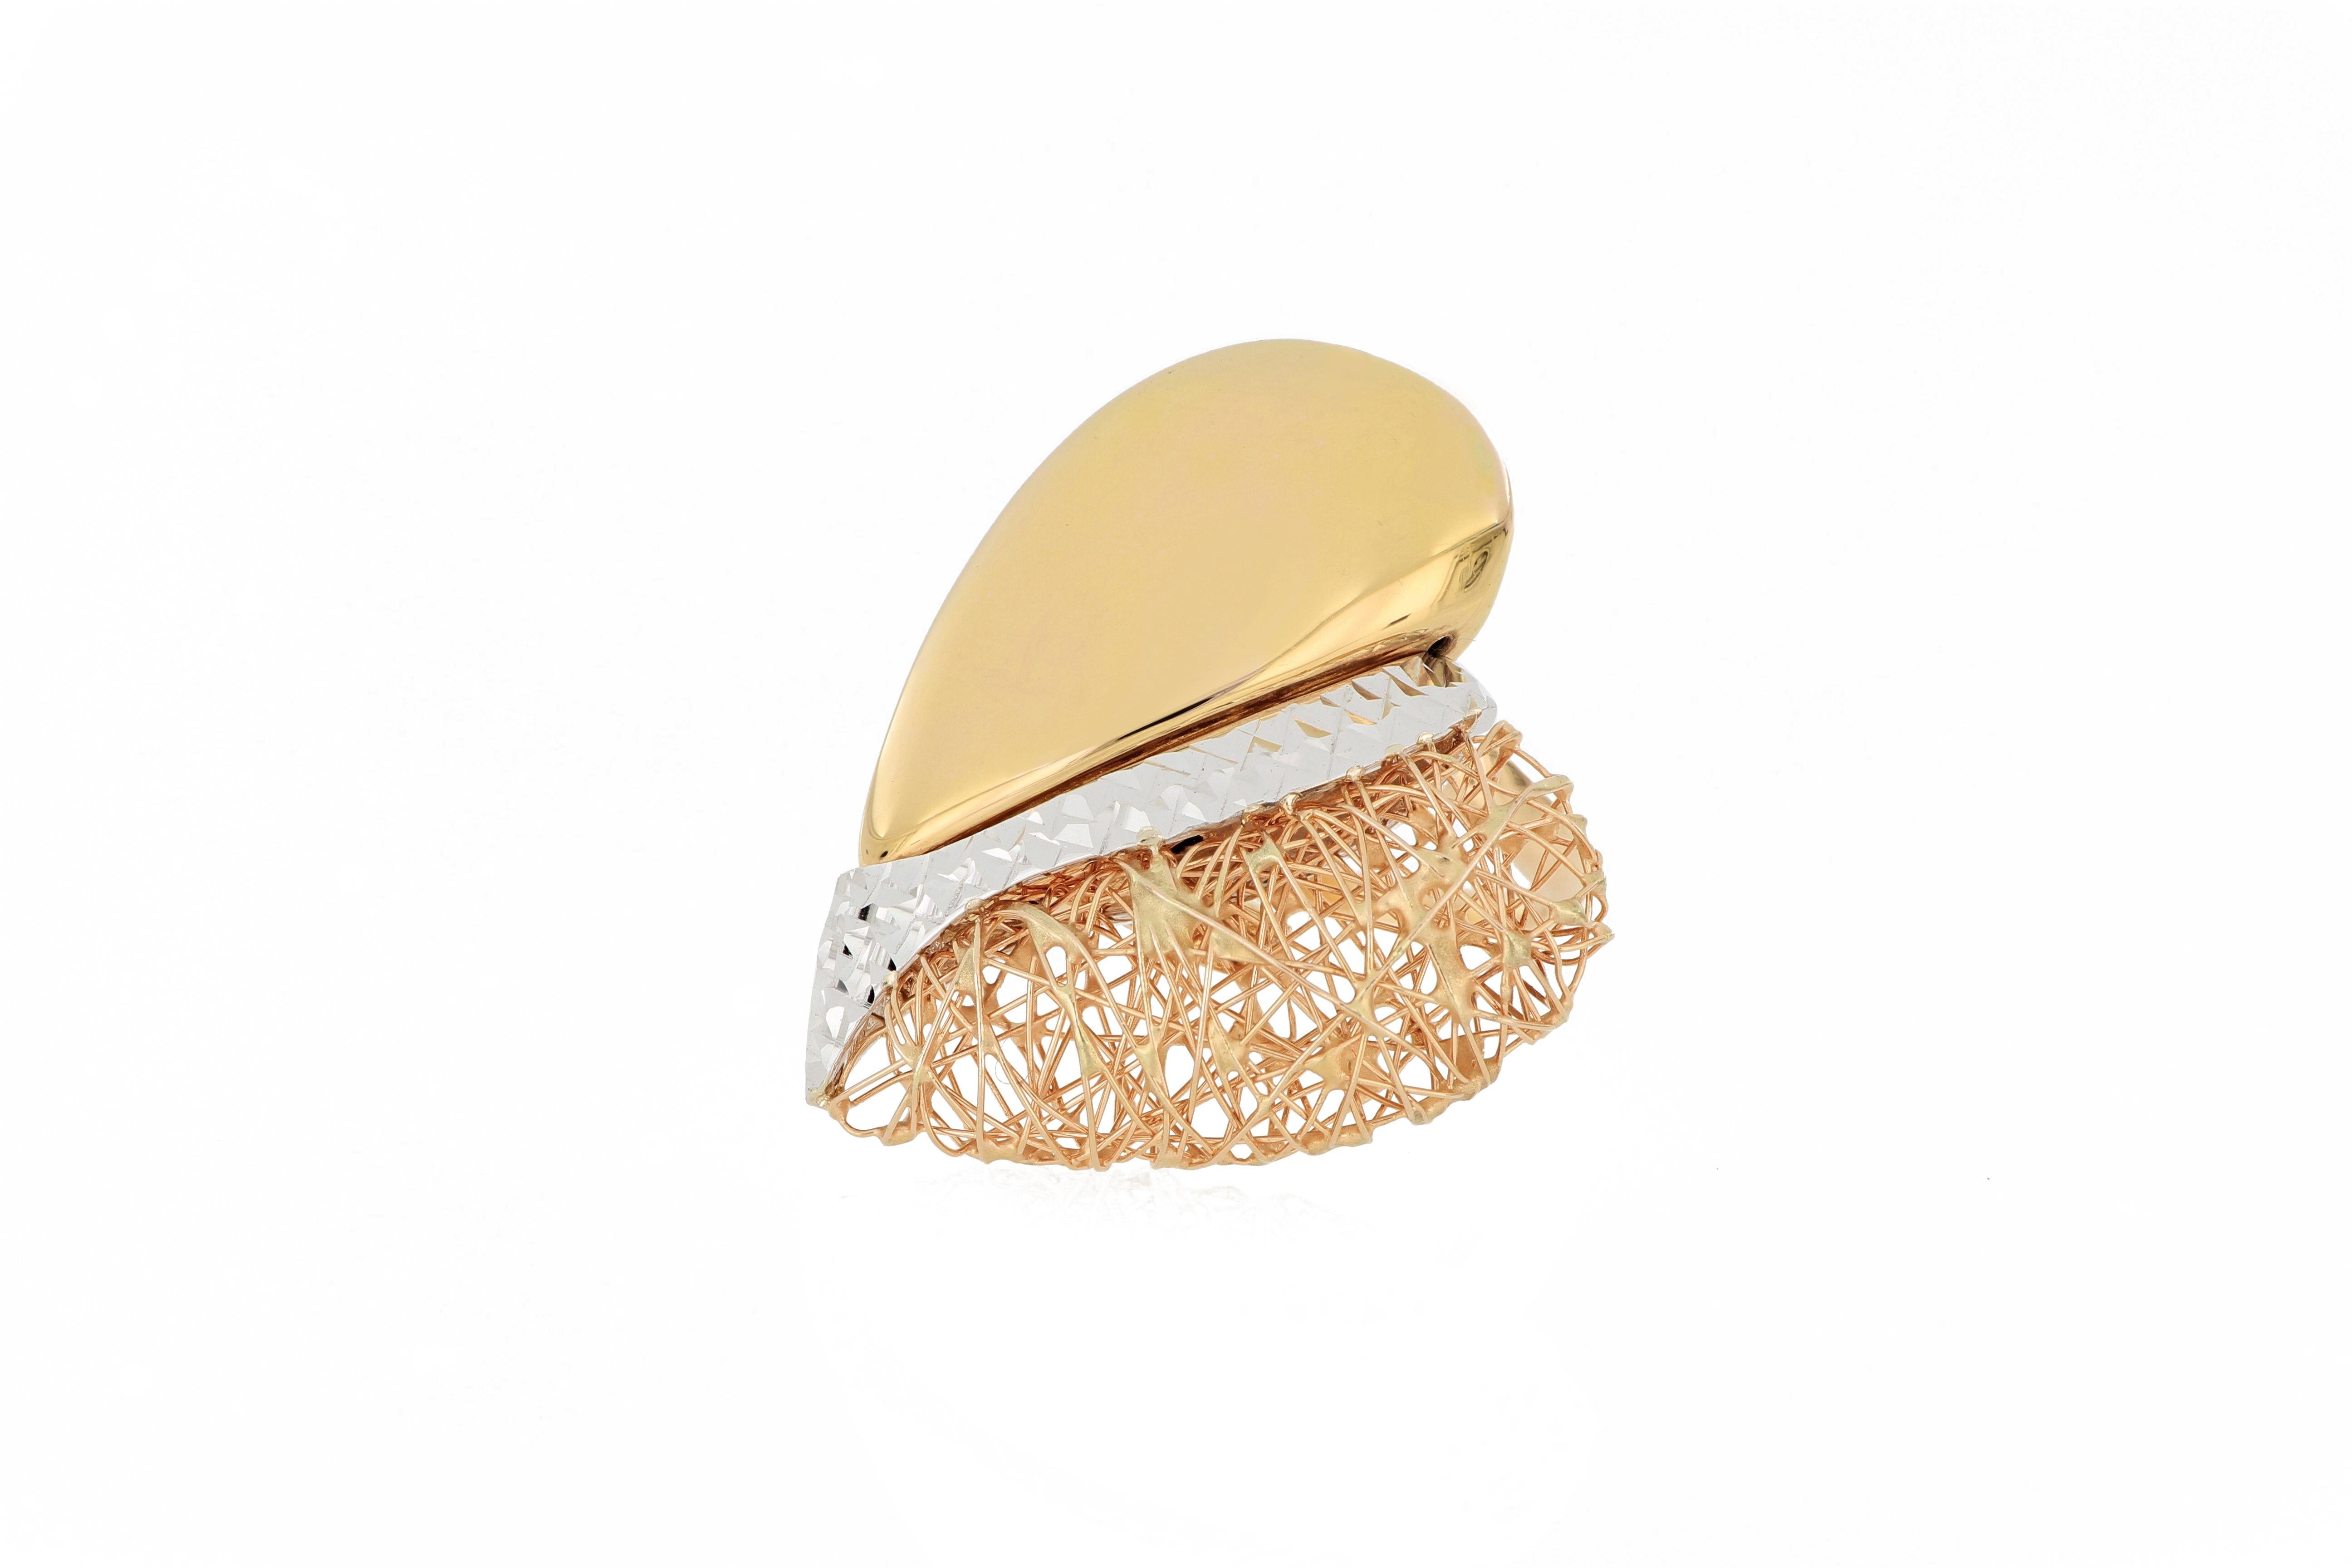 Une élégante bague tricolore en or 18 carats en forme de cœur, de fabrication italienne, composée d'or blanc, d'or jaune et d'or rose dans des textures de surface différentes.
O'Che 1867 a été fondé il y a un siècle et demi à Macao. La marque est